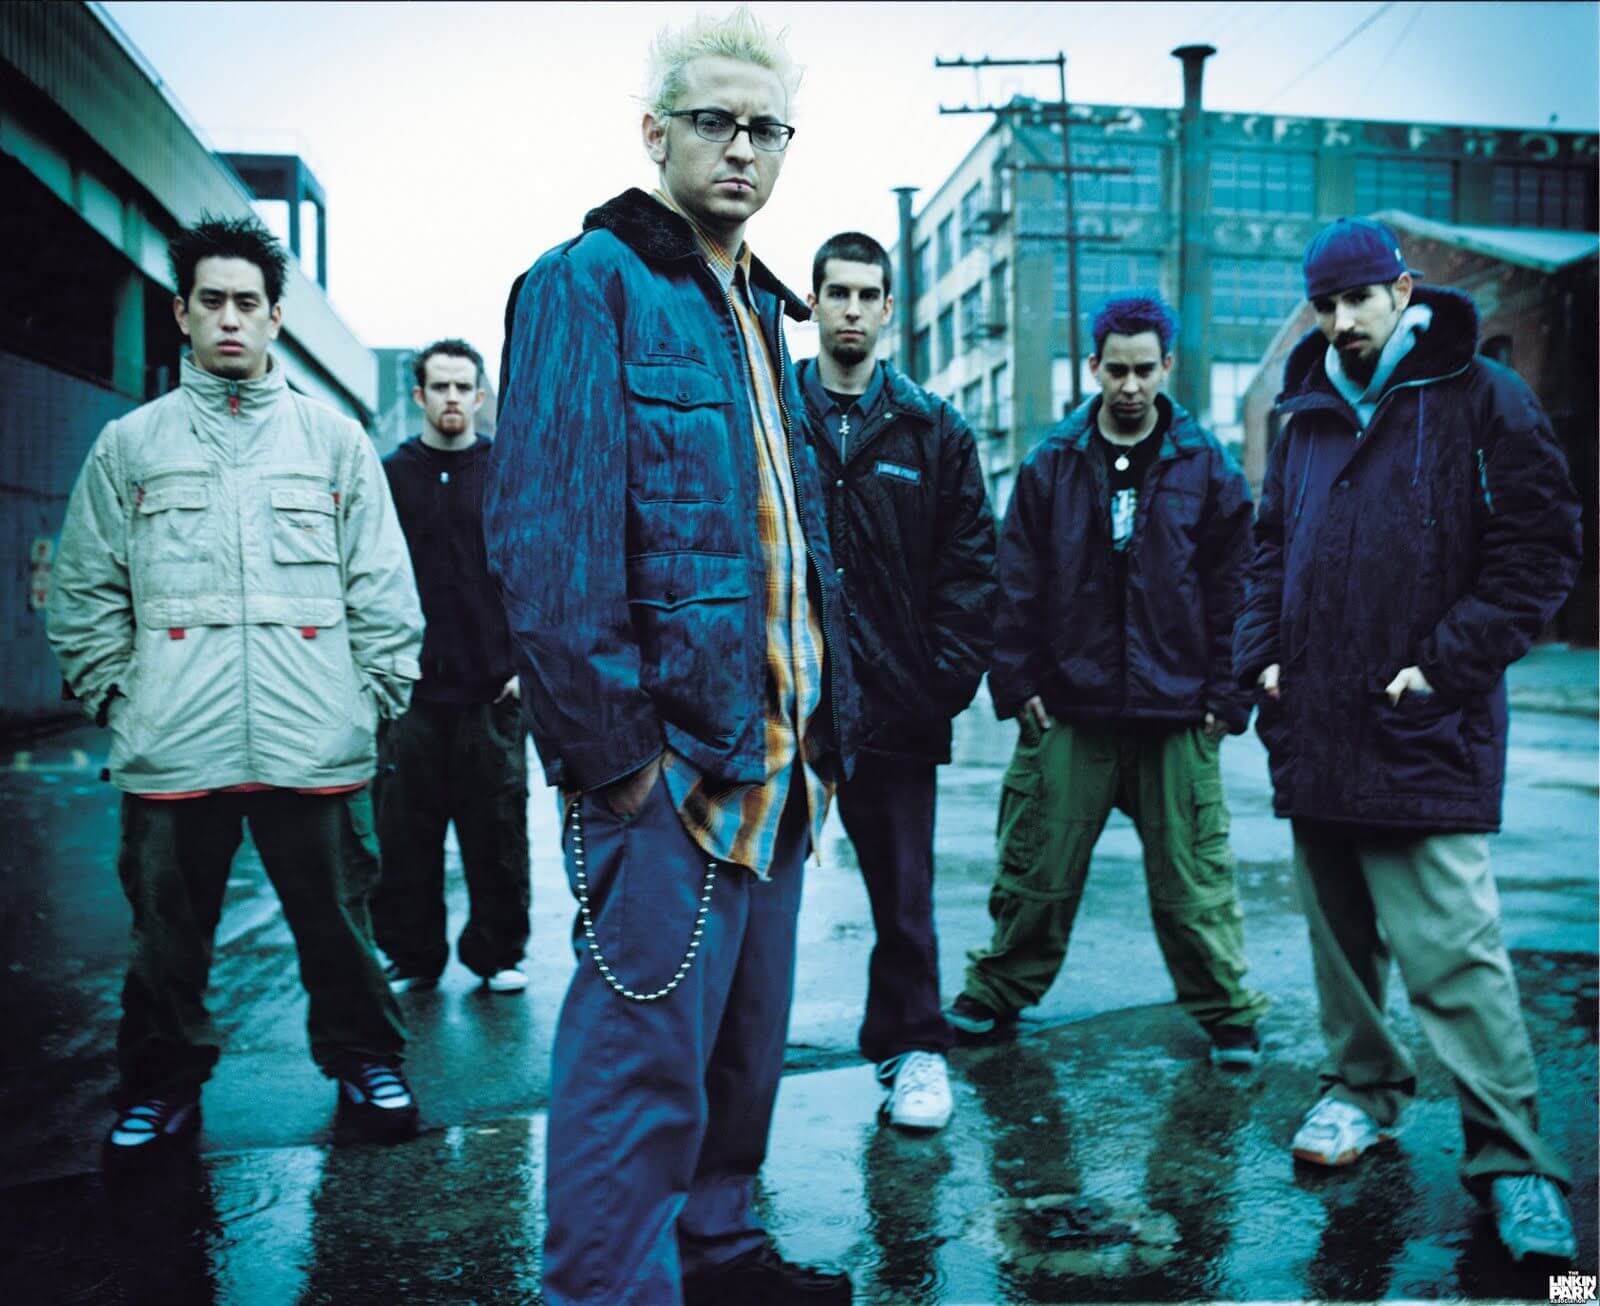 Personil Linkin Park saat photoshoot untuk album “Hybrid Theory”, debut album yang membawa mereka ke puncak karir